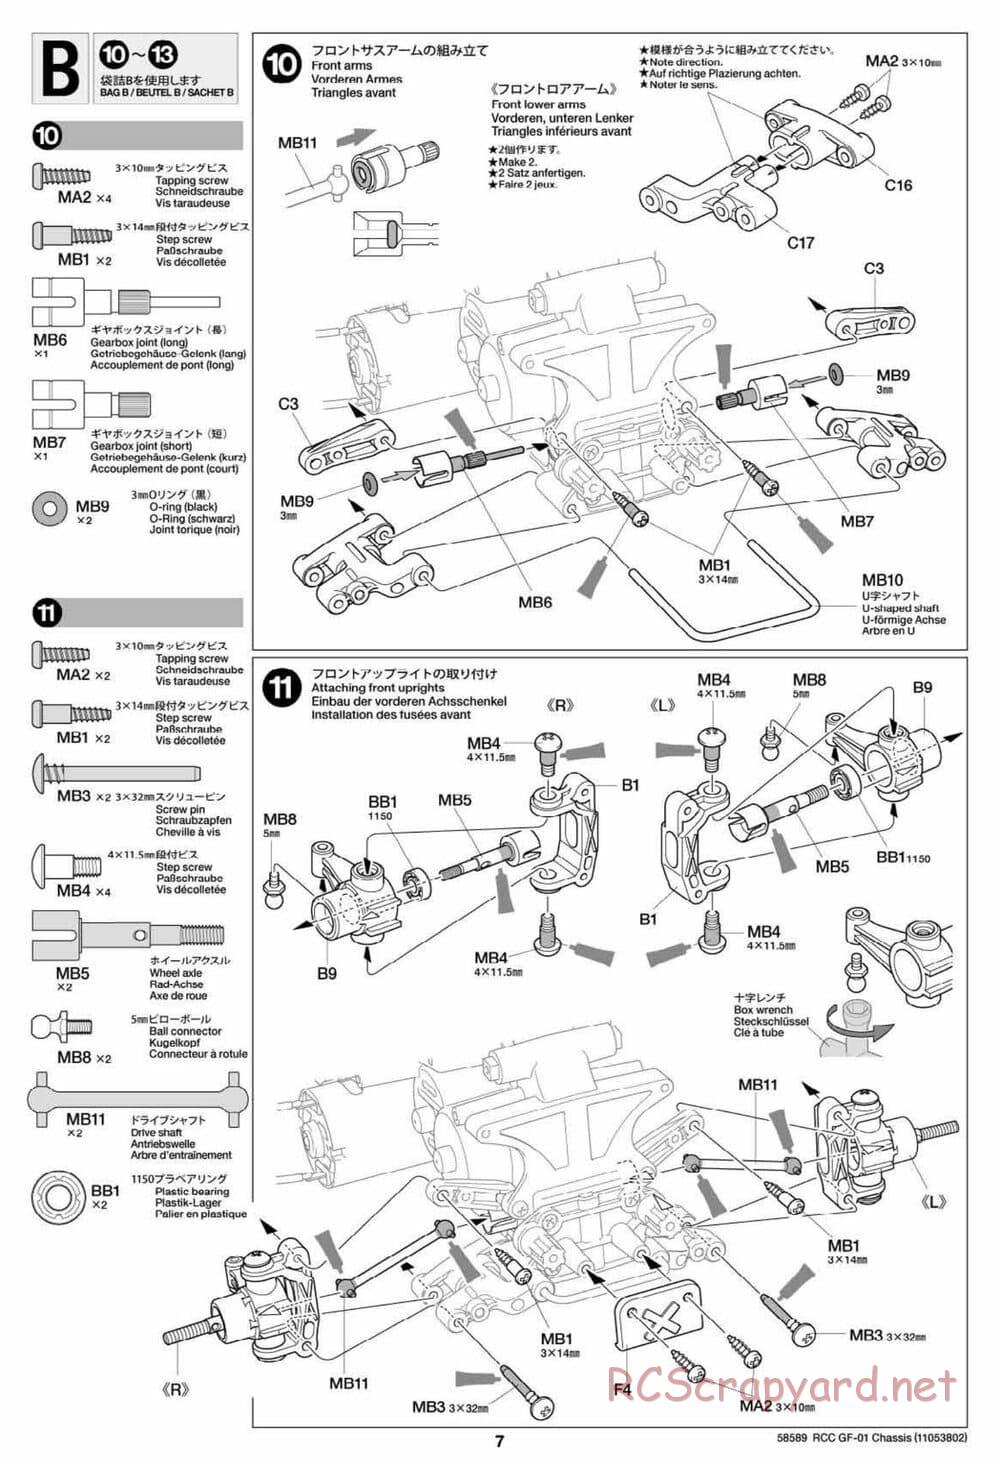 Tamiya - GF-01 Chassis - Manual - Page 7